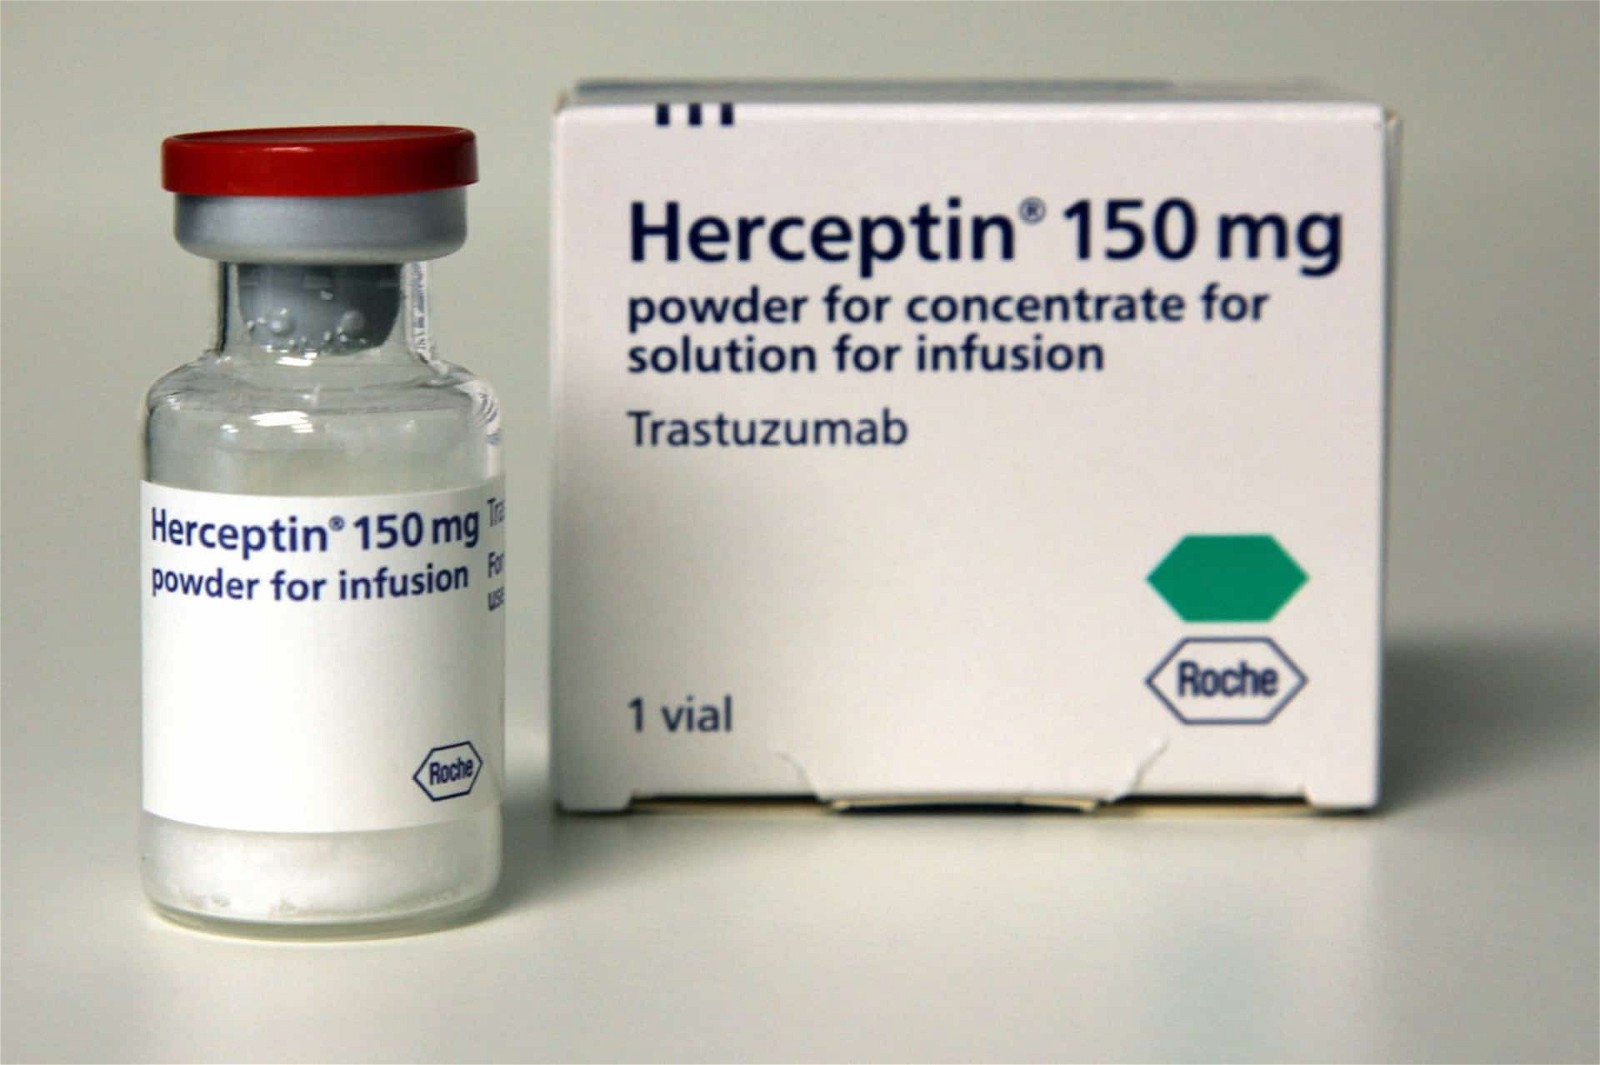 Thuốc Herceptin được chỉ định để điều trị bệnh nhân trưởng thành bị ung thư vú di căn